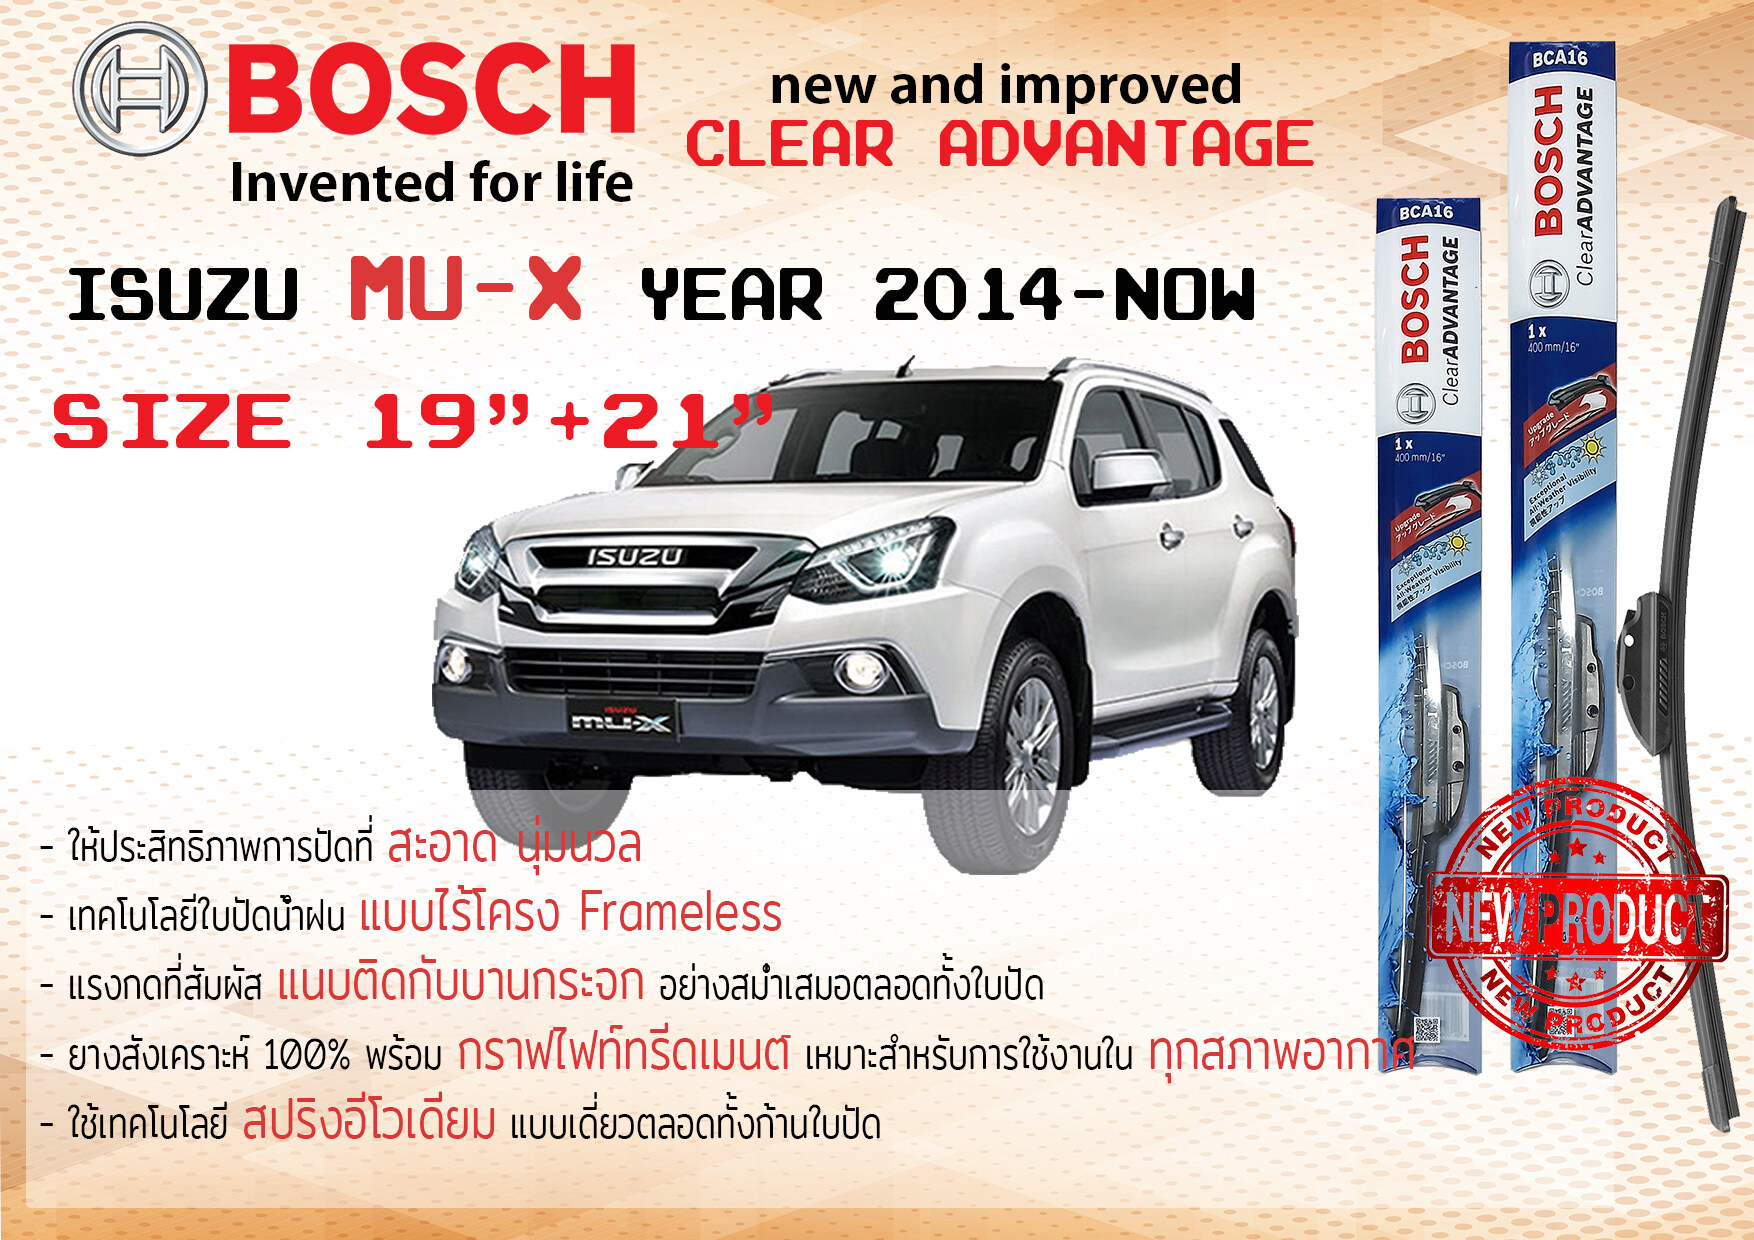 ใบปัดน้ำฝน คู่หน้า Bosch Clear Advantage frameless ก้านอ่อน ขนาด 19”+21” สำหรับรถ Isuzu Mu-X,MuX ปี 2014-2020 ปี 14,15,16,17,18,19,20 อีซูซุ มิวเอ็กซ์ มิวเอ๊กซ์ ทนแสง UV